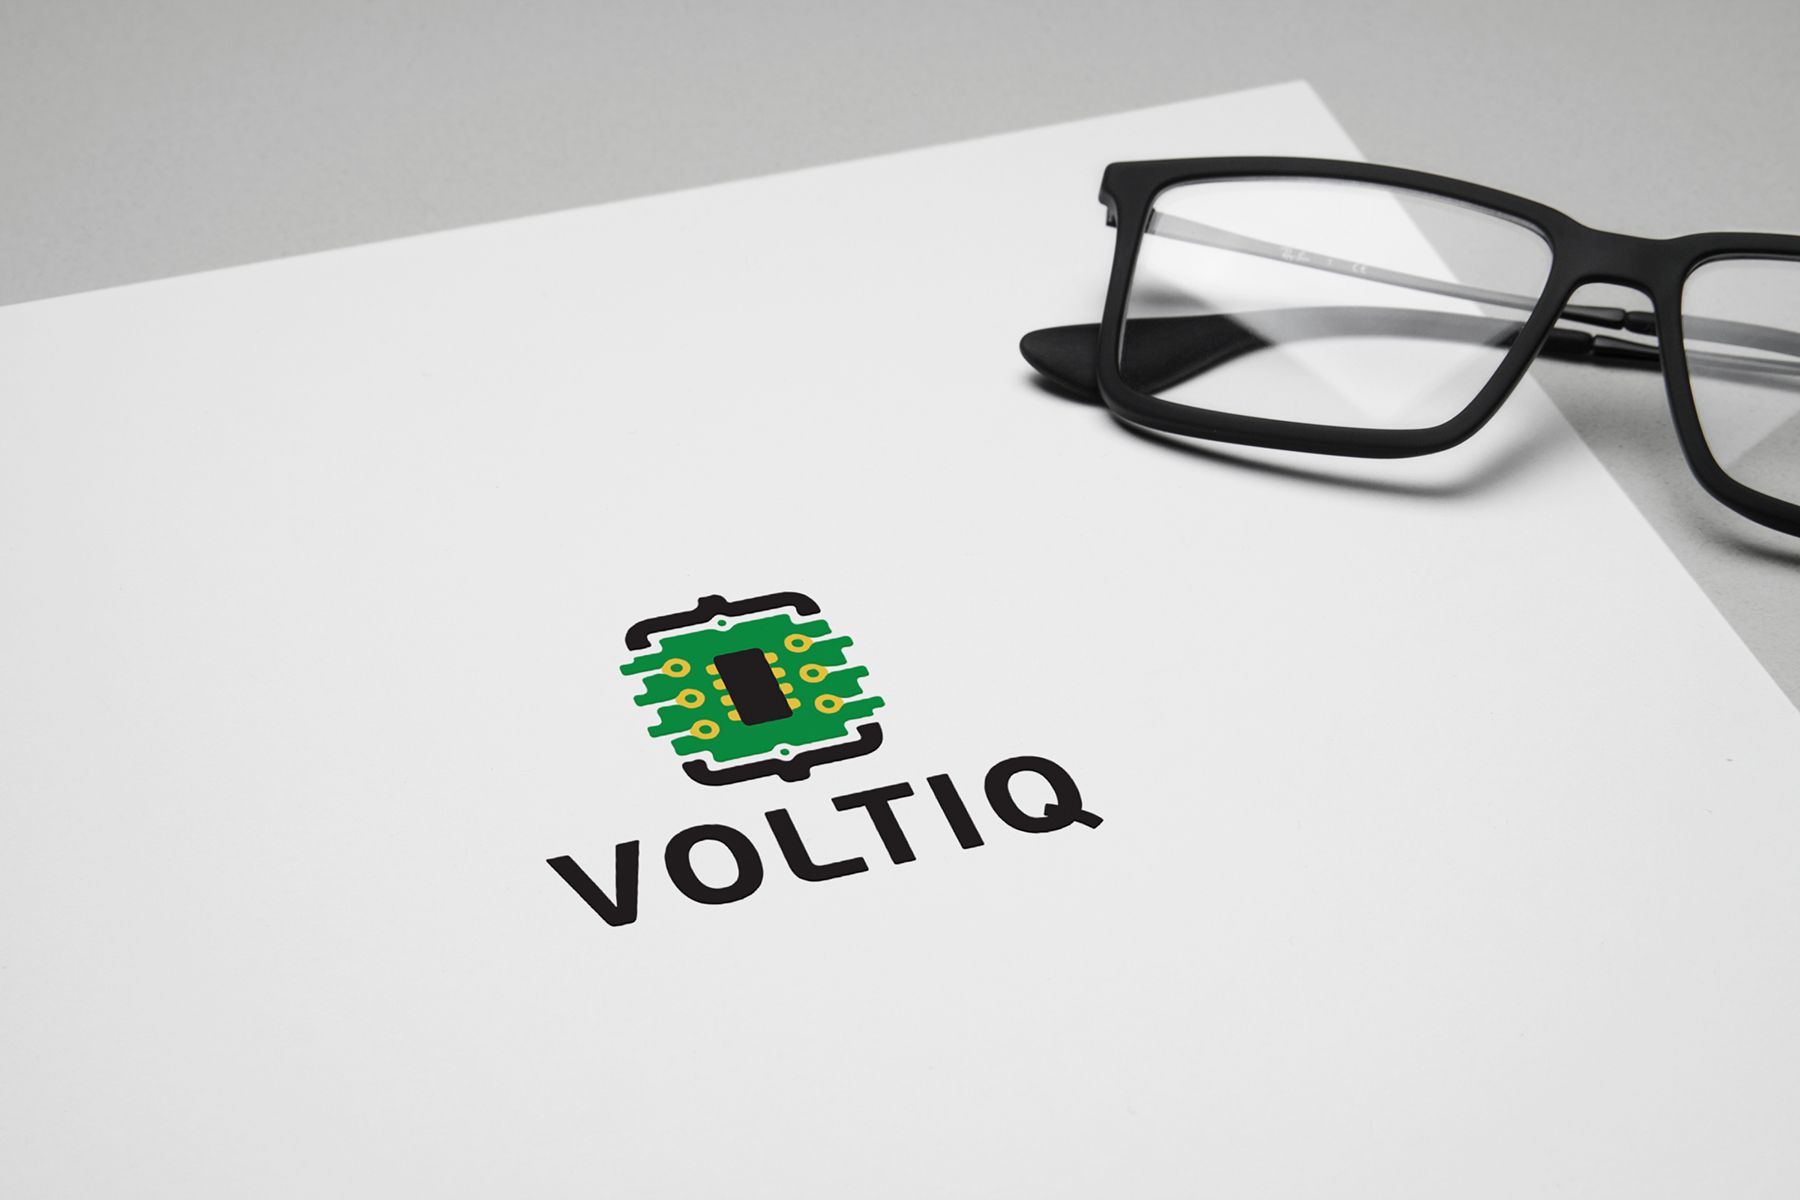 Логотип для Интернет-магазин Вольтик (VoltIQ.ru) - дизайнер Da4erry